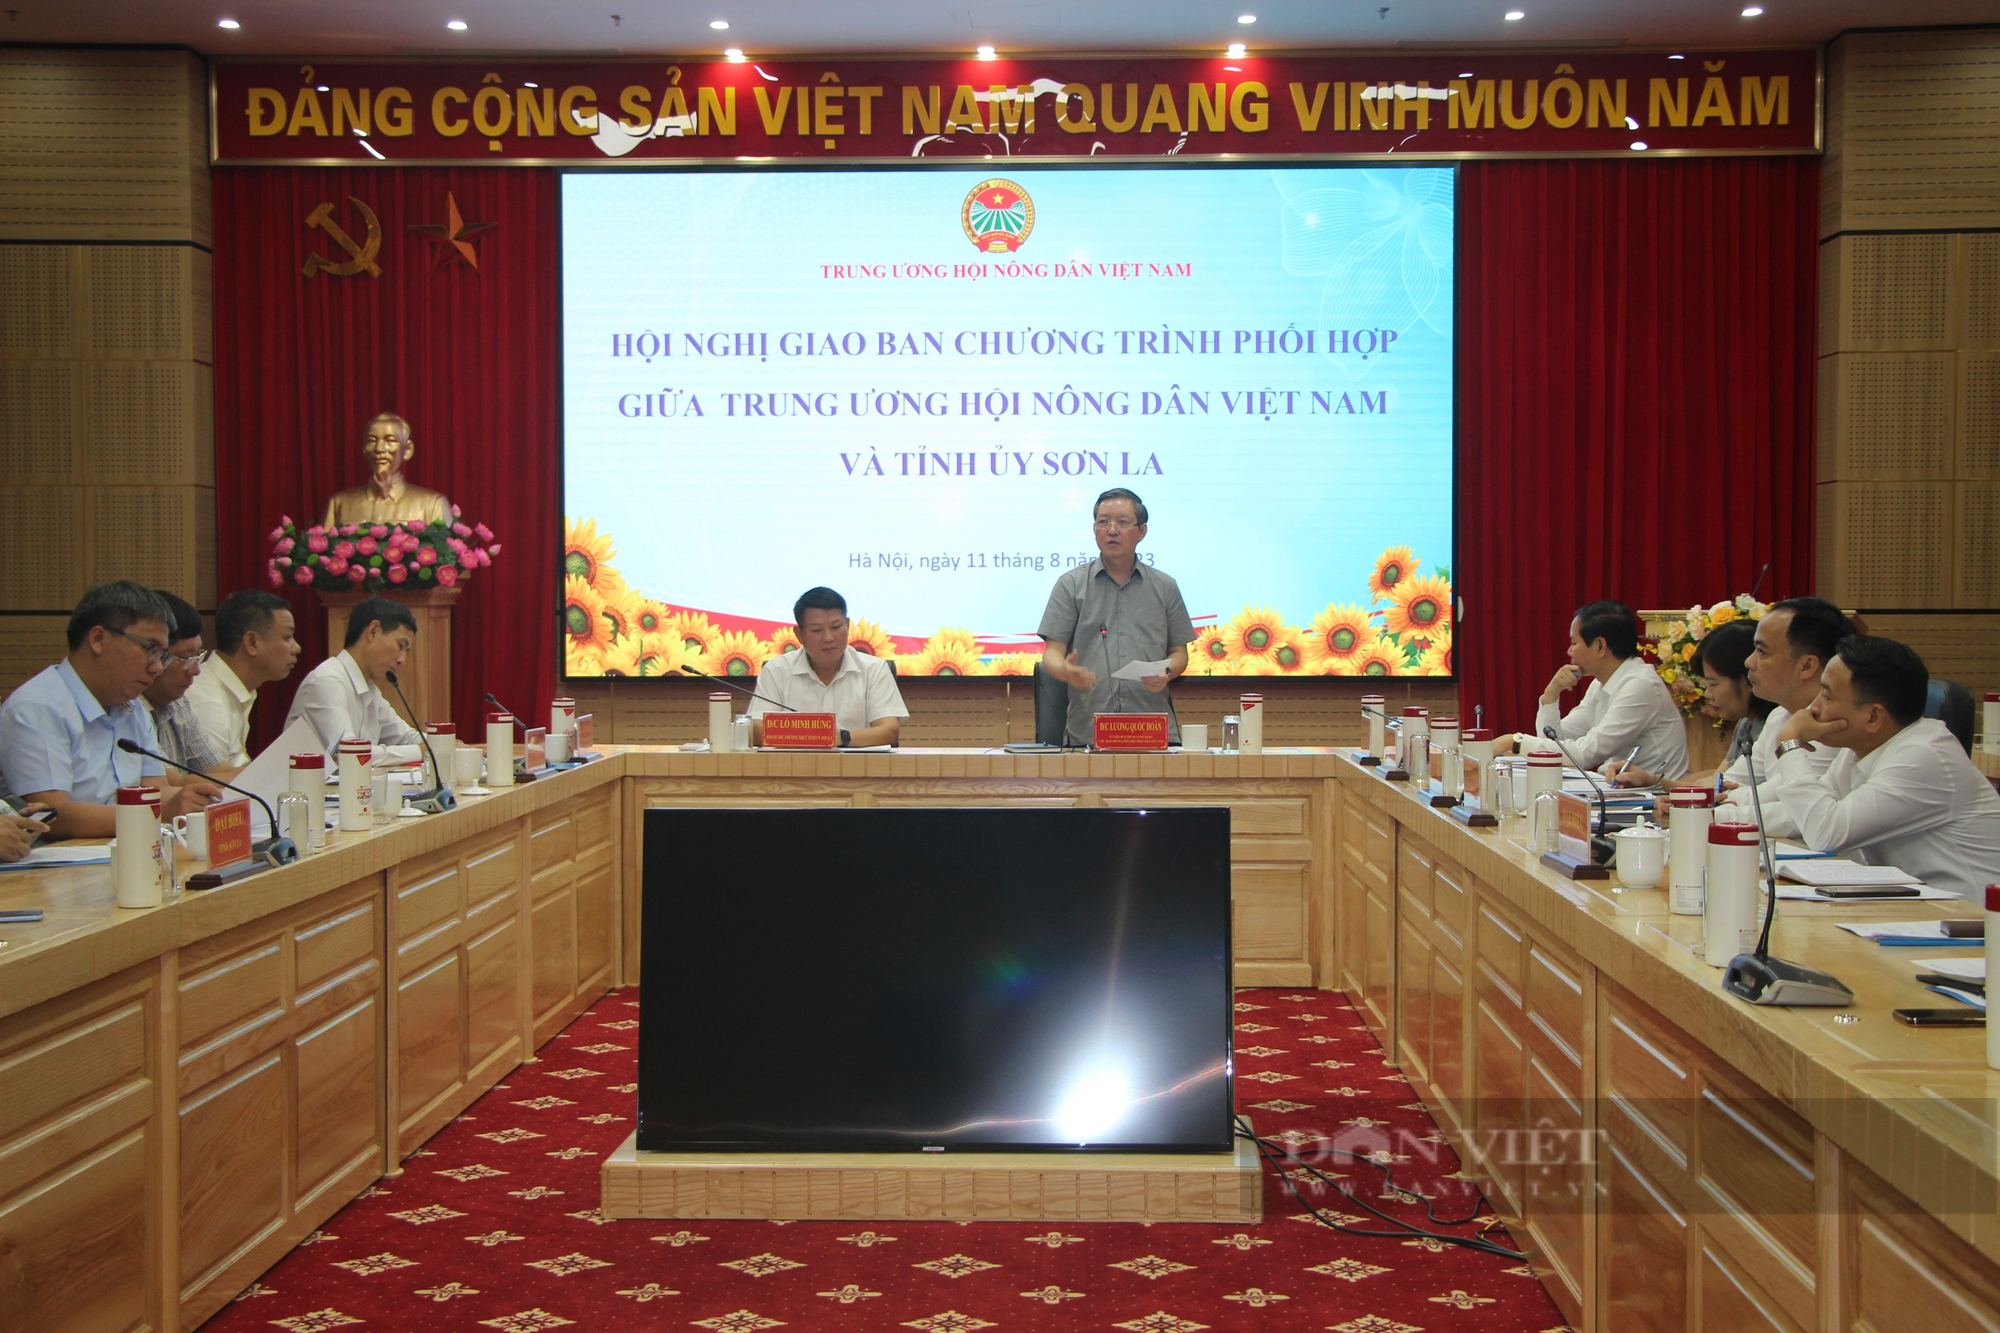 Trung ương Hội Nông dân Việt Nam và Tỉnh ủy Sơn La giao ban Chương trình phối hợp 7 tháng năm 2023 - Ảnh 5.